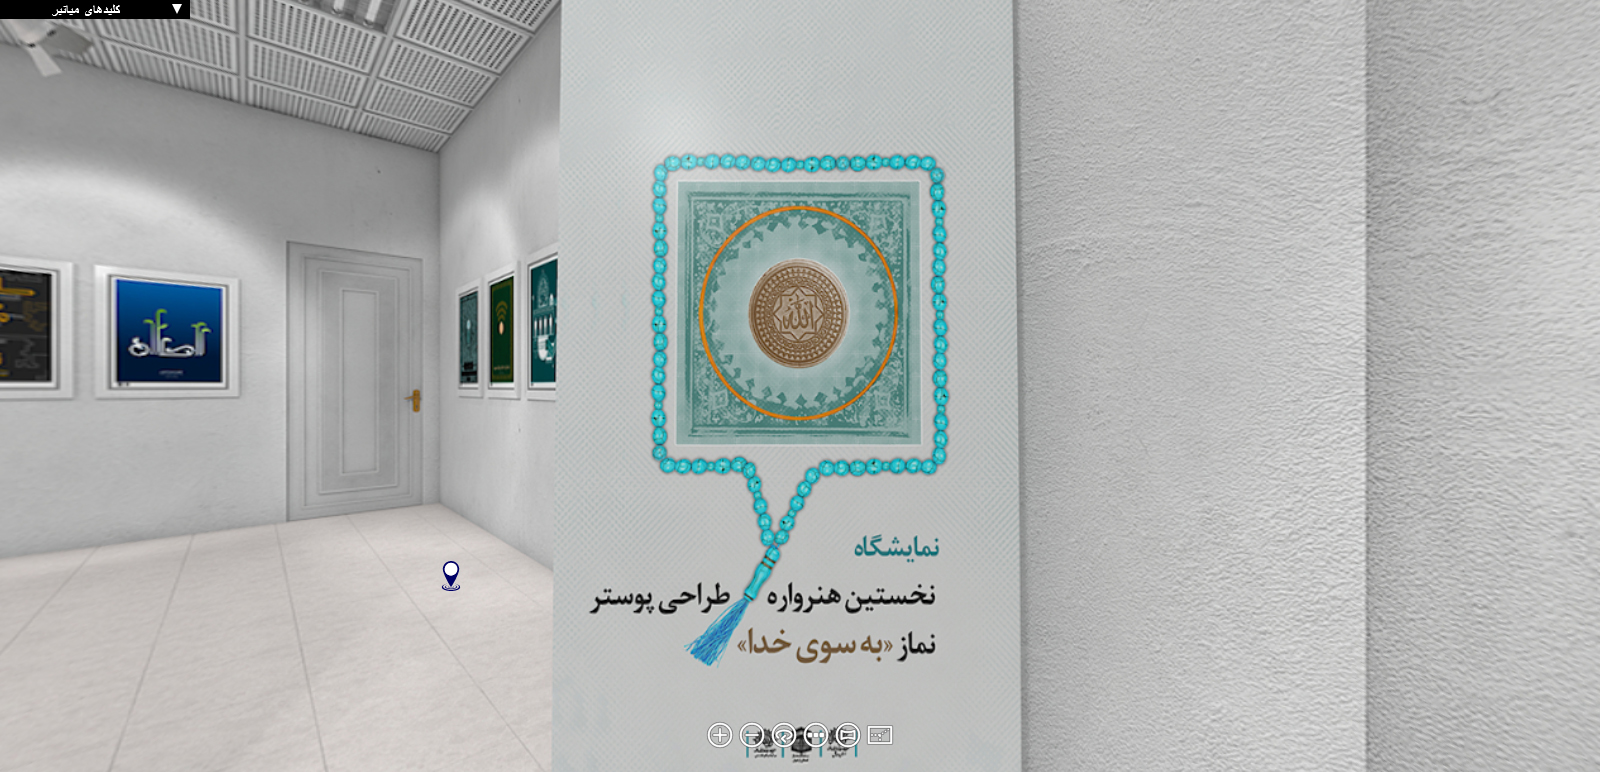 نمایشگاه مجازی هنرواره ملی طراحی پوستر «به سوی خدا» فعال شد